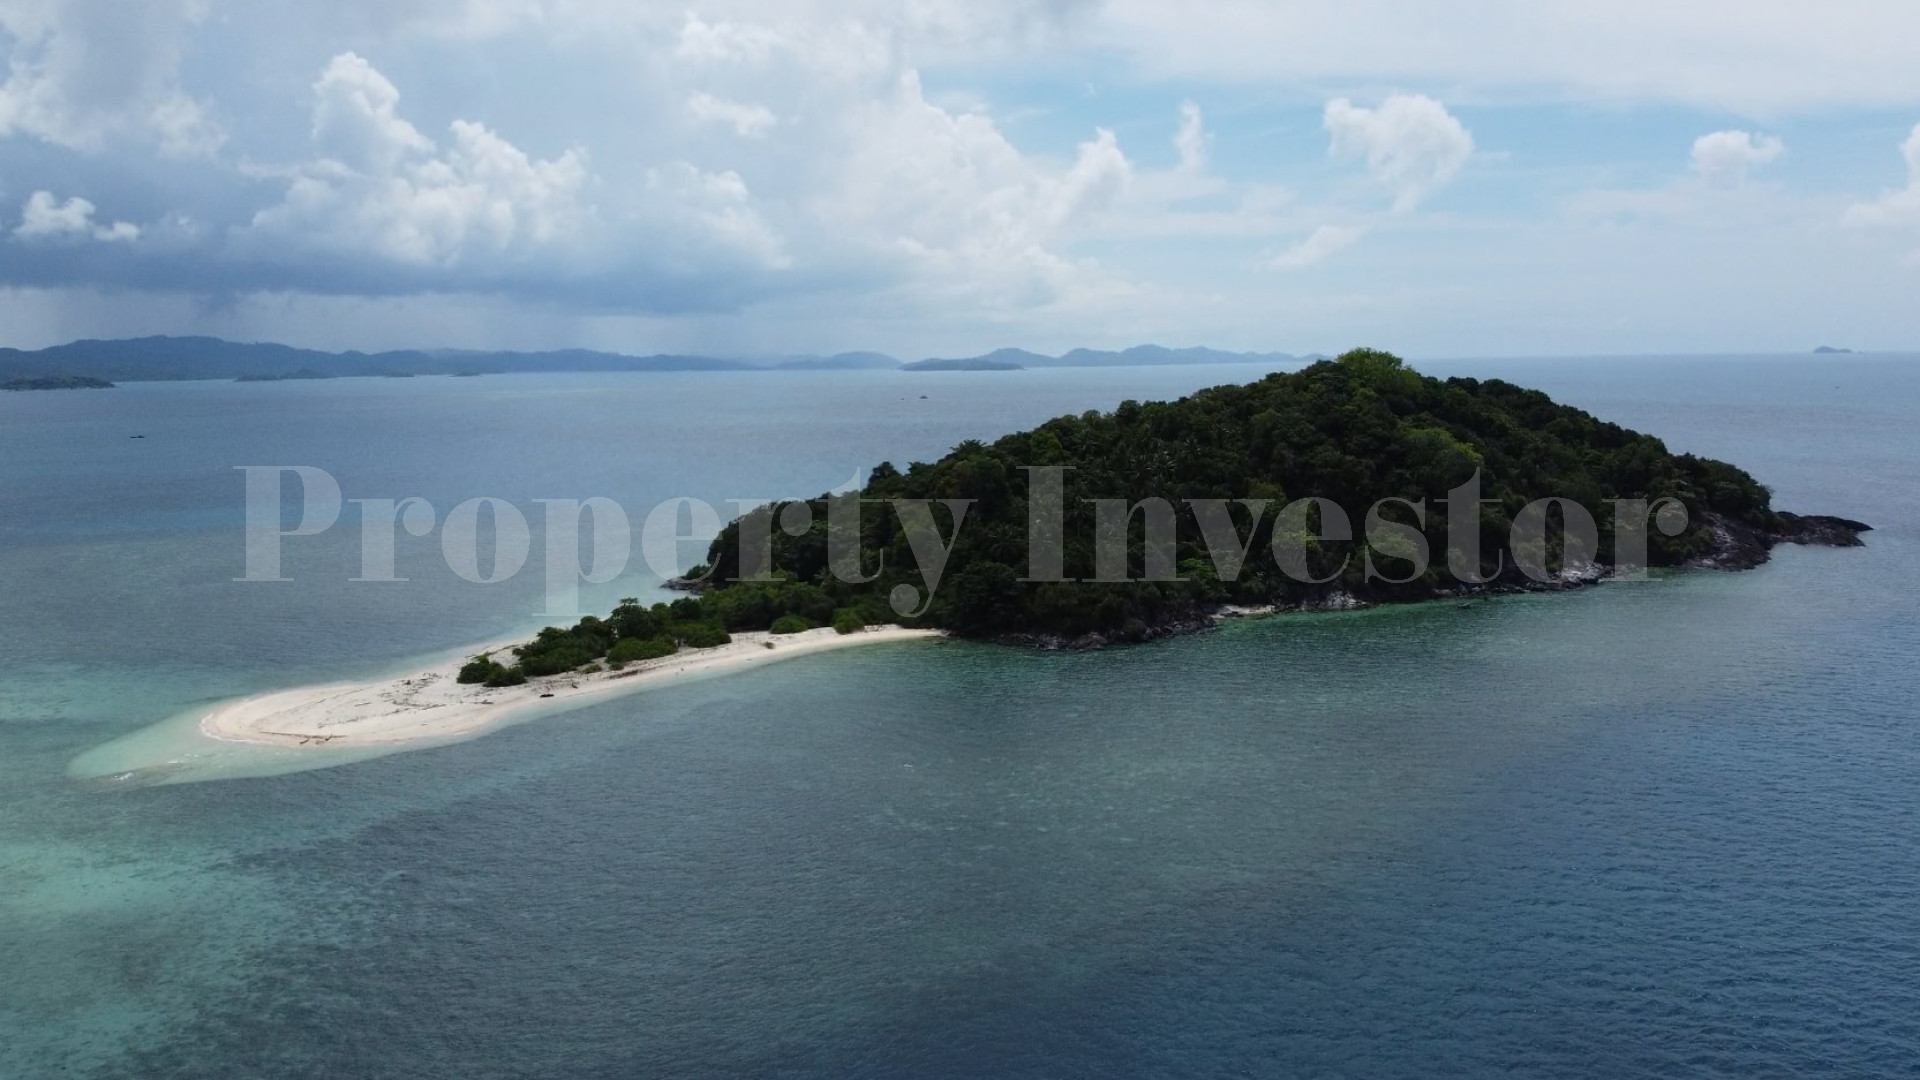 Продаётся нетронутый дикий остров 7 гектар под коммерческое развитие на островах Риау, Индонезия